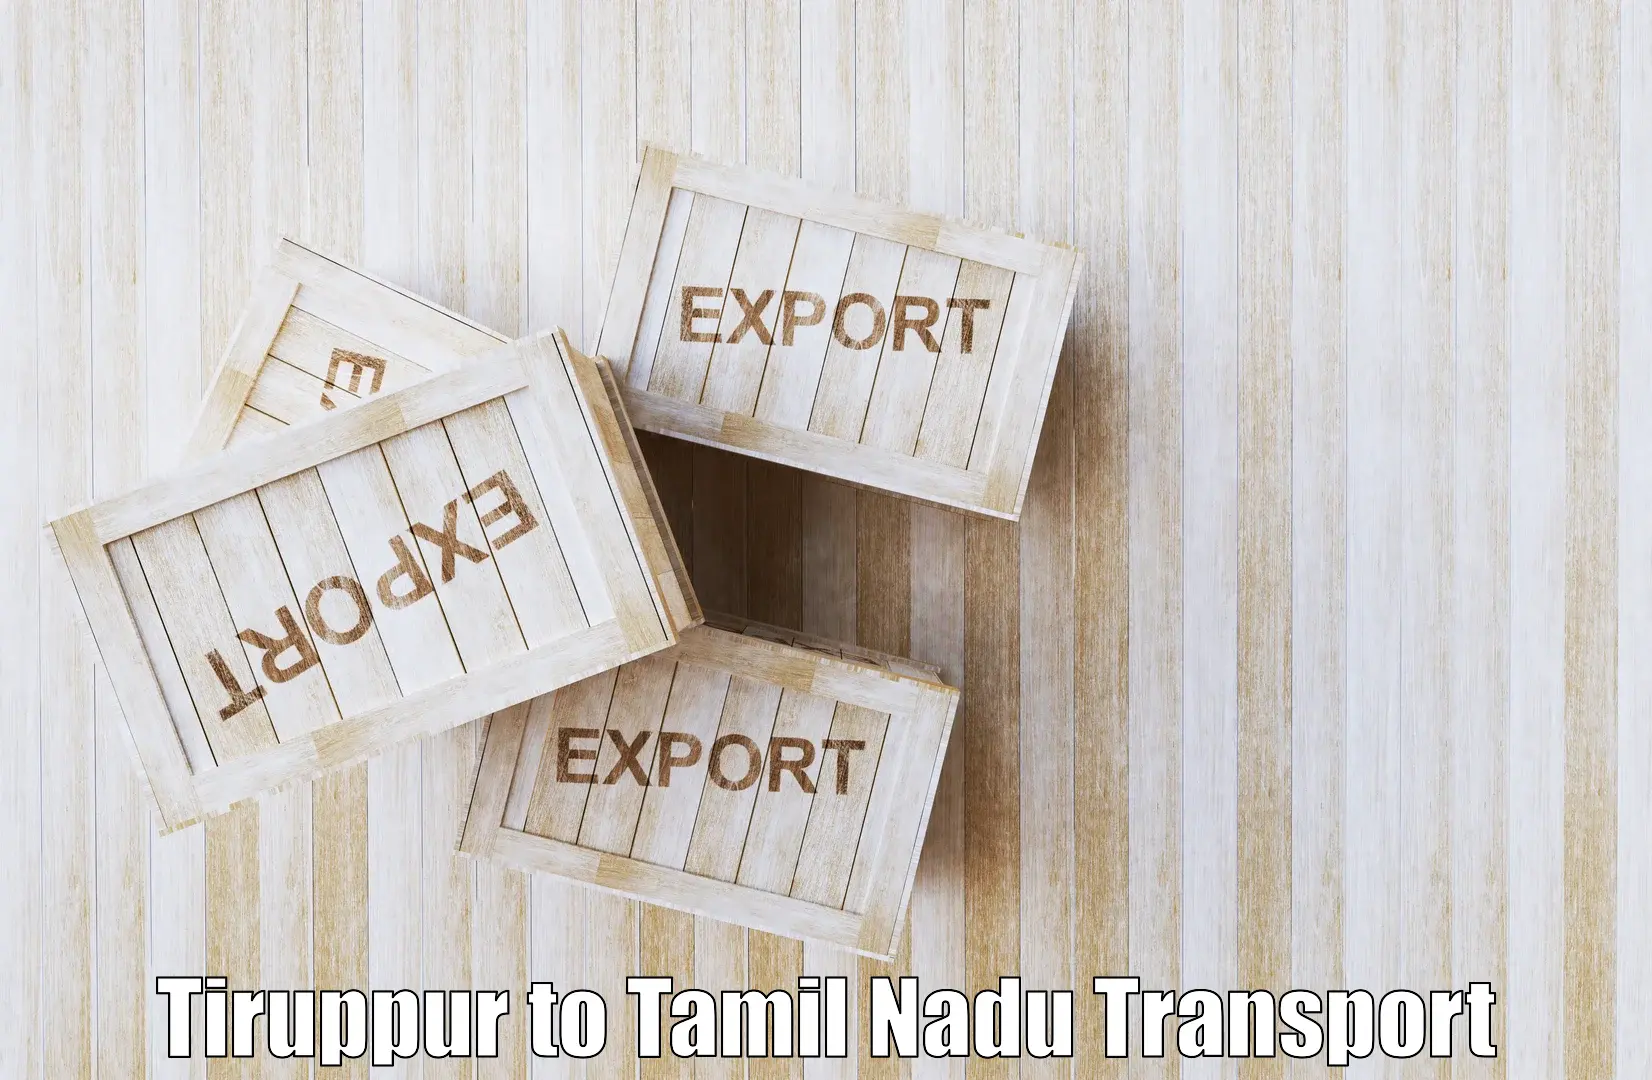 Online transport Tiruppur to Ennore Port Chennai